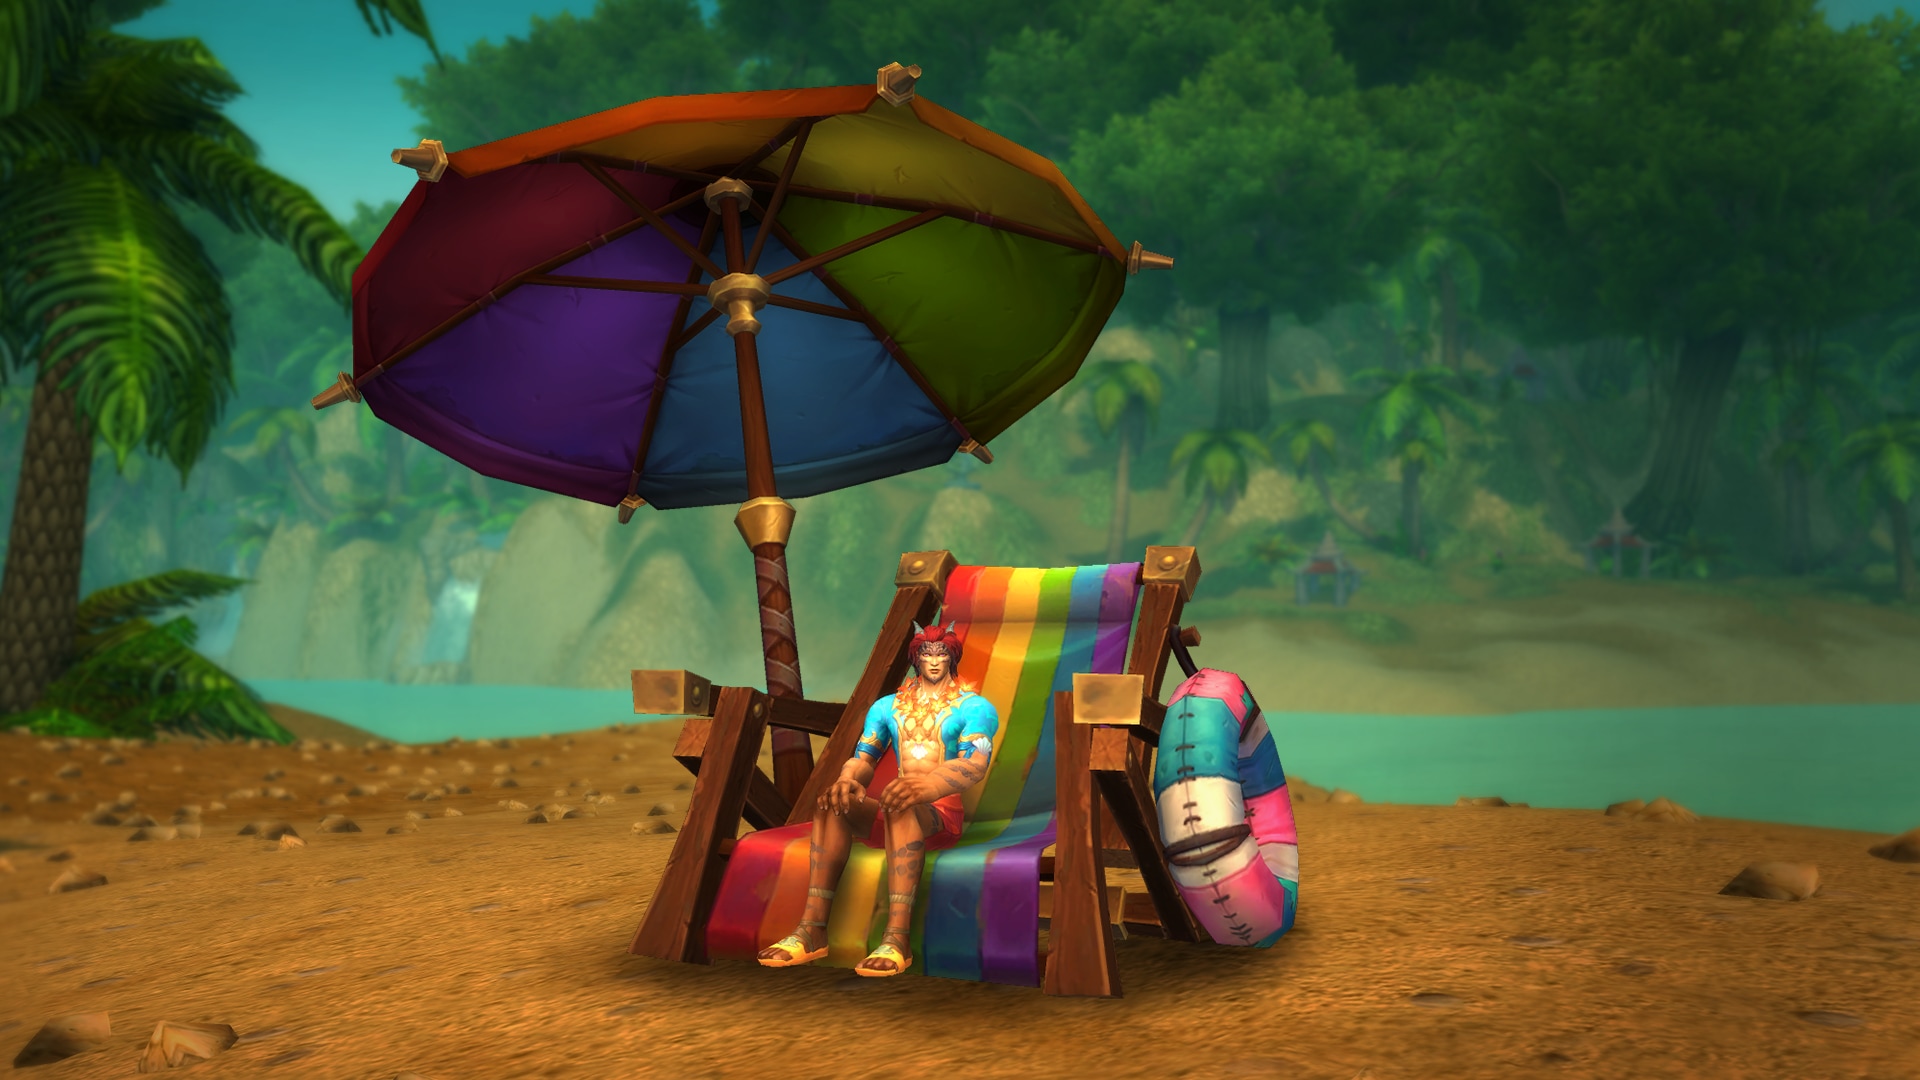 Chaise de plage et parasol aux couleurs de l’arc-en-ciel